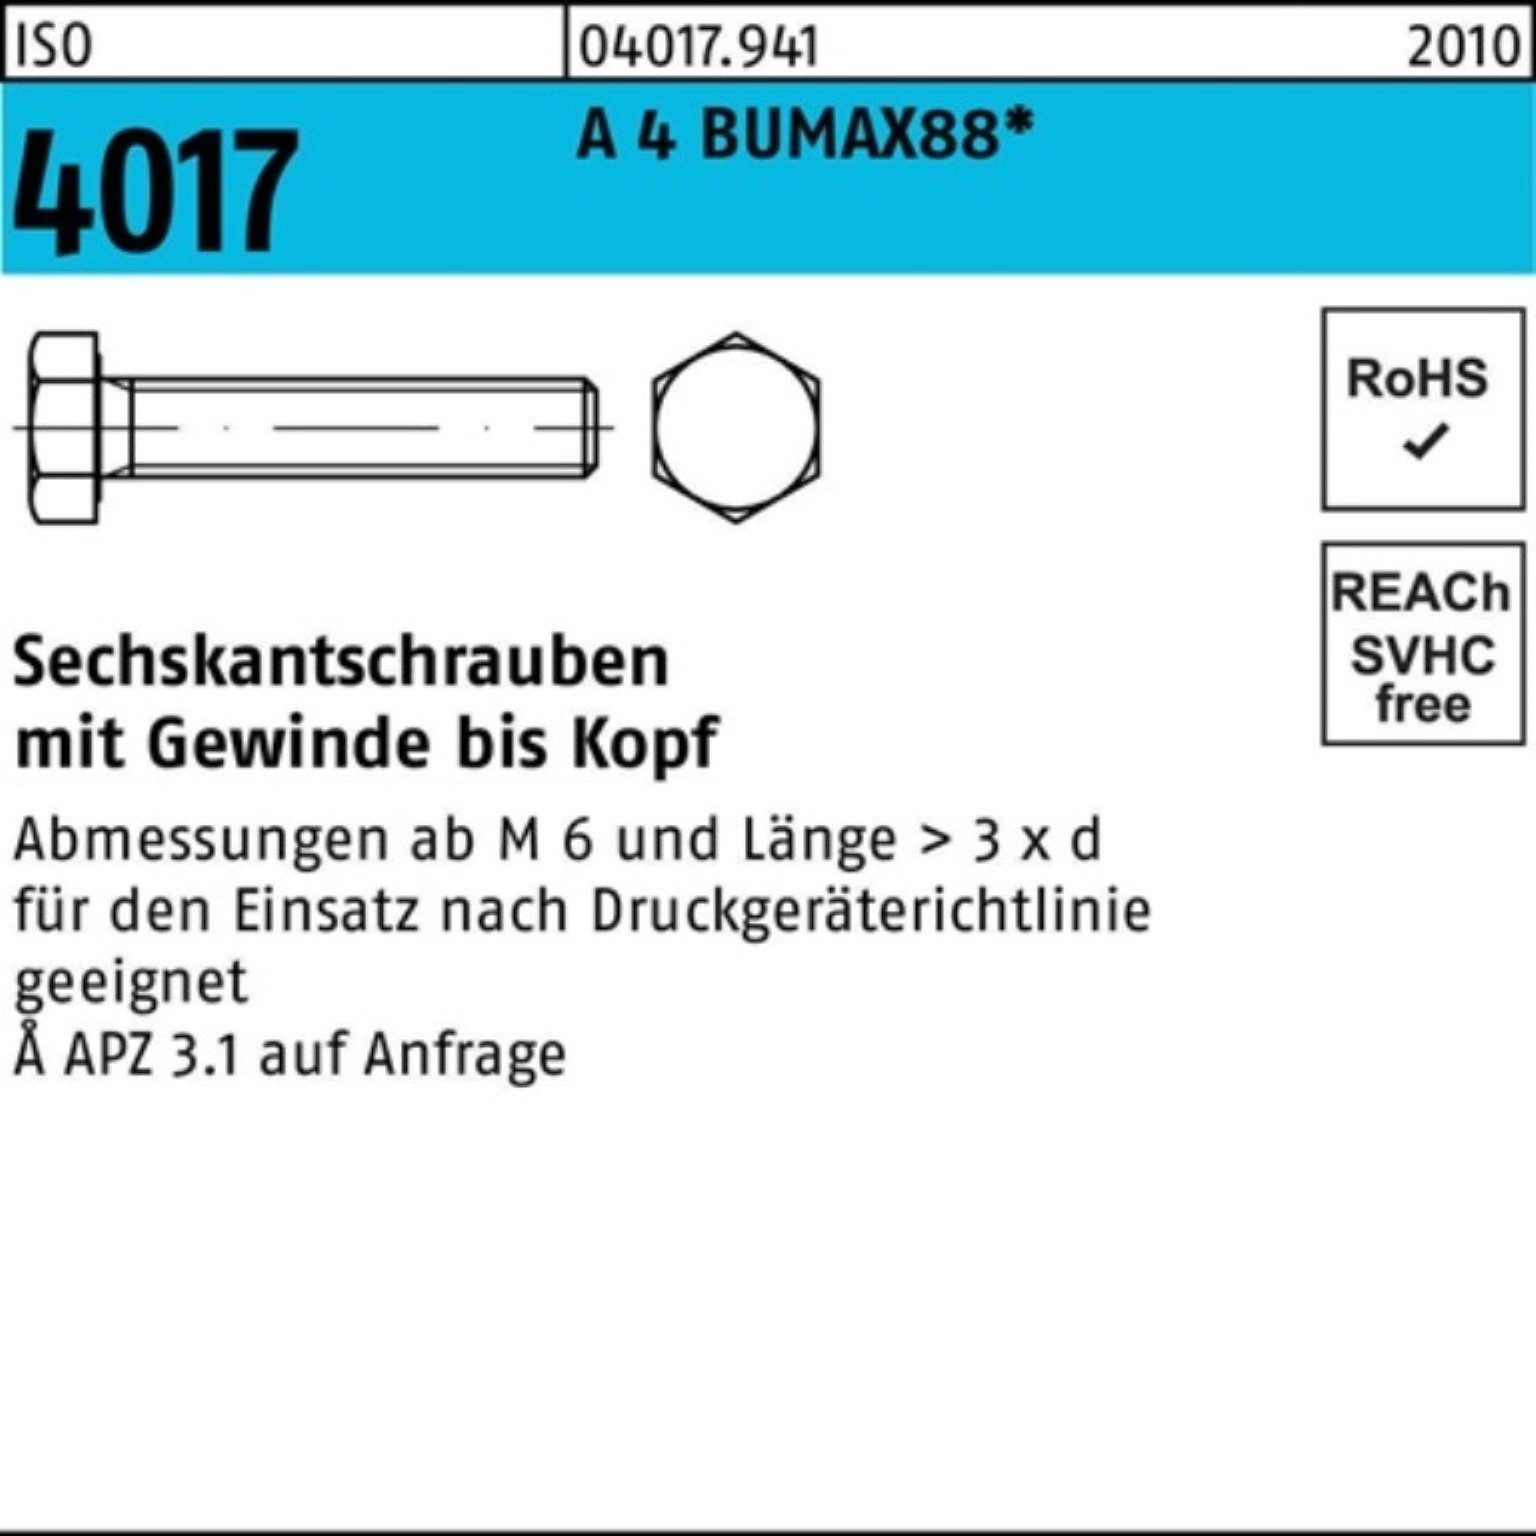 Bufab Sechskantschraube 100er Pack Sechskantschraube ISO 4017 VG M20x 60 A 4 BUMAX88 10 Stück | Schrauben